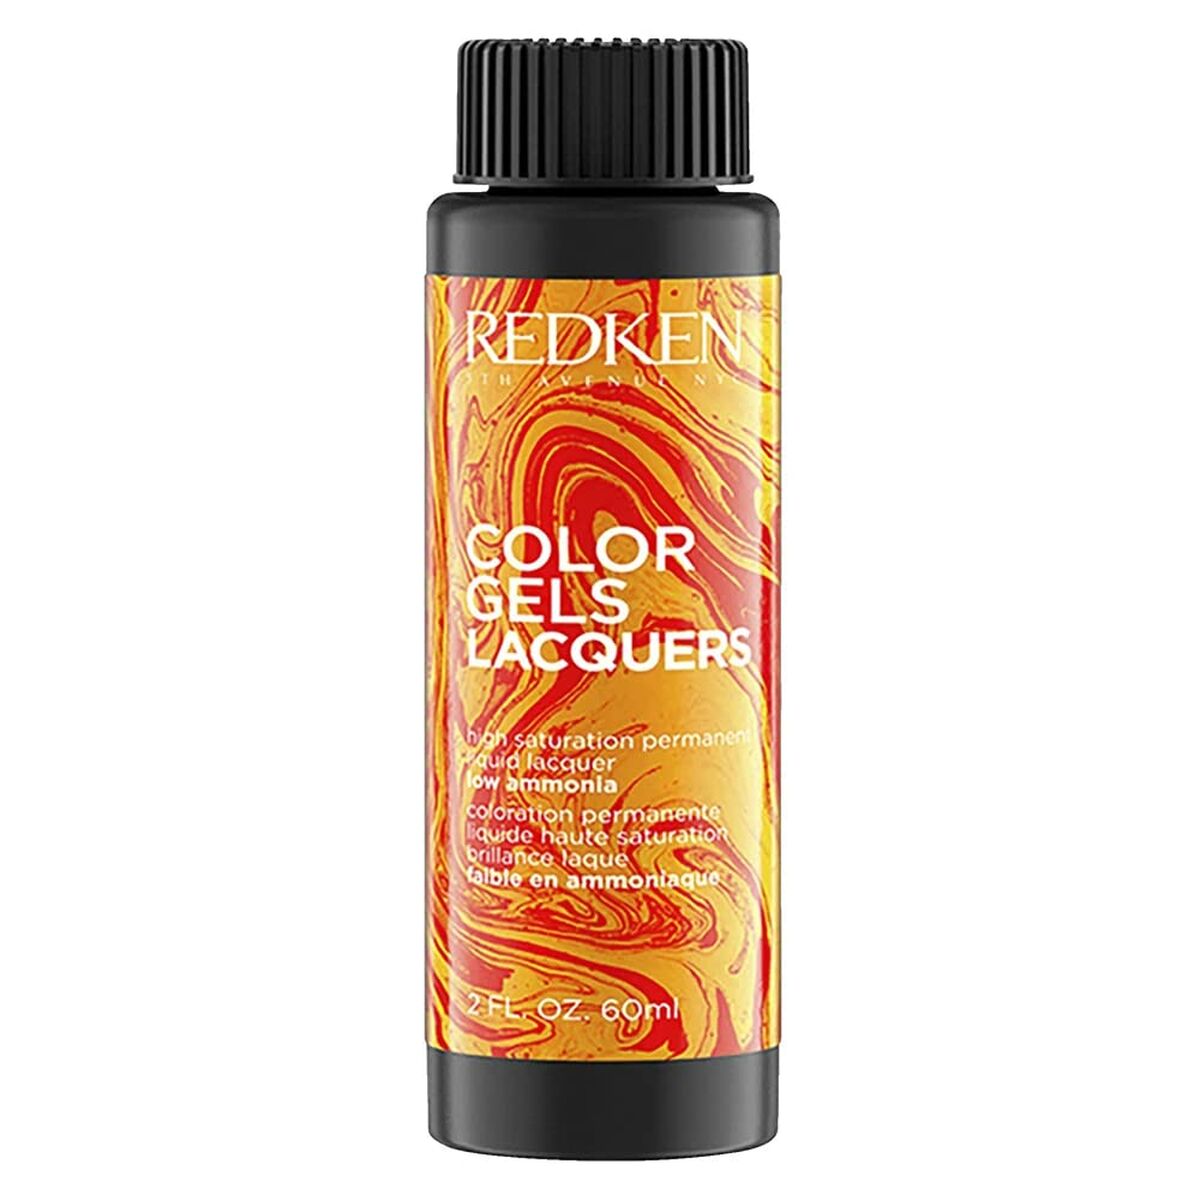 Permanent Dye Redken Color Gel Lacquers 6RR-blaze 3 x 60 ml Liquid